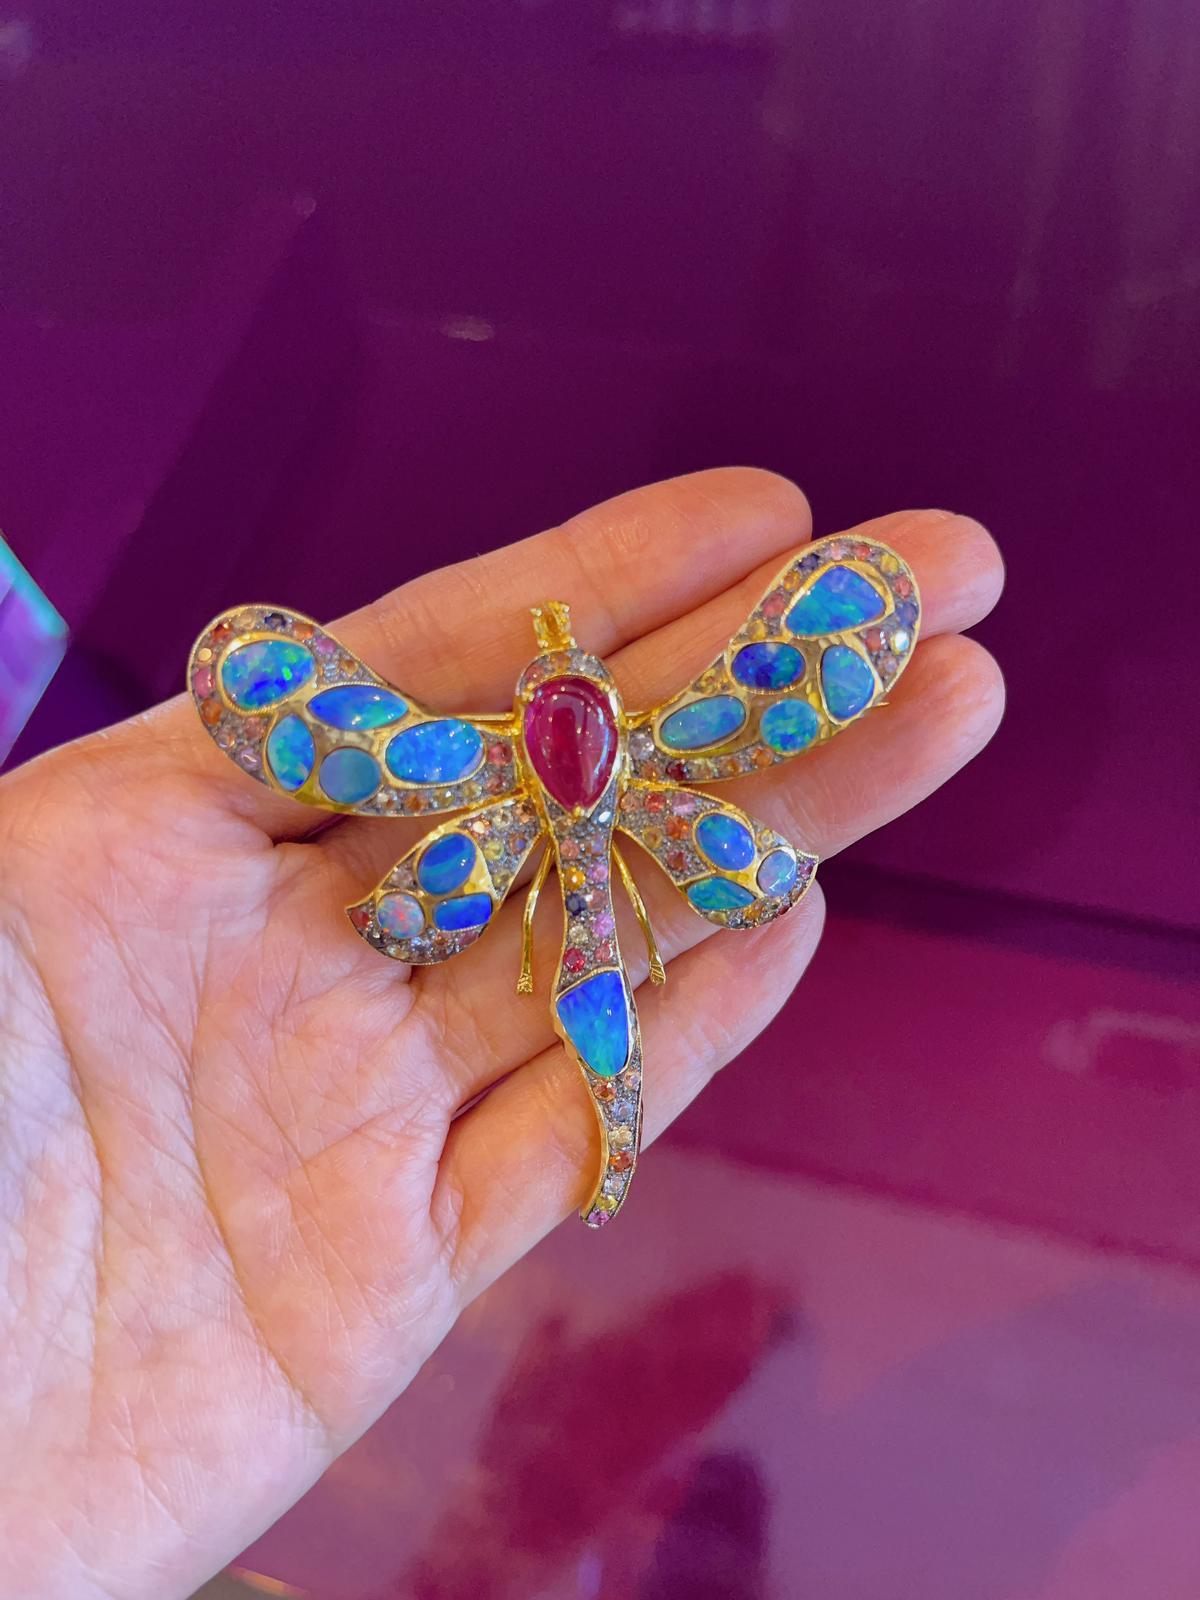 Women's Bochic “Capri” Blue Fire Opal, Ruby & Sapphire Brooch Set in 22k Gold & Silver